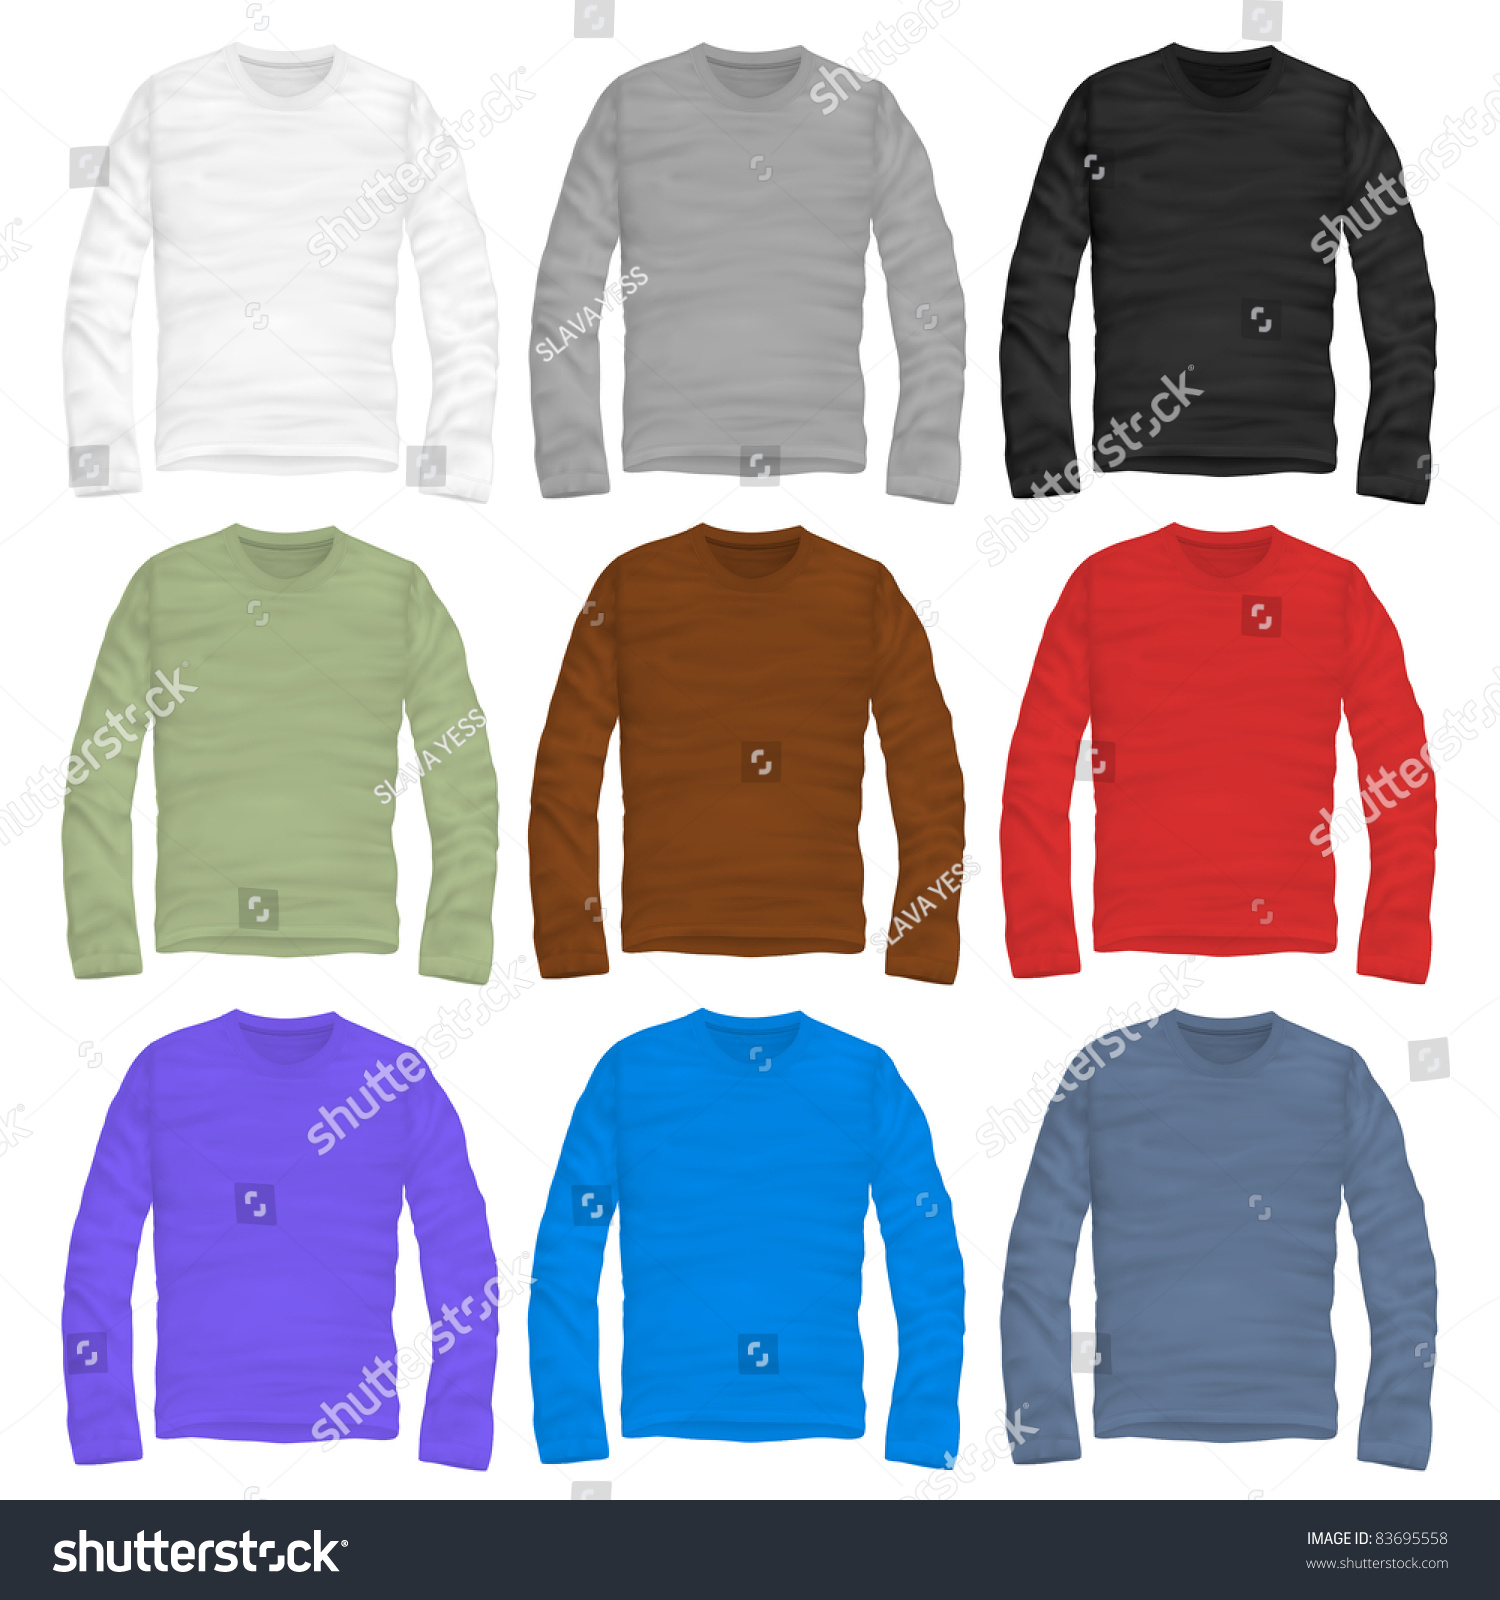 Vector Long-Sleeve Shirt Design Template - 83695558 : Shutterstock